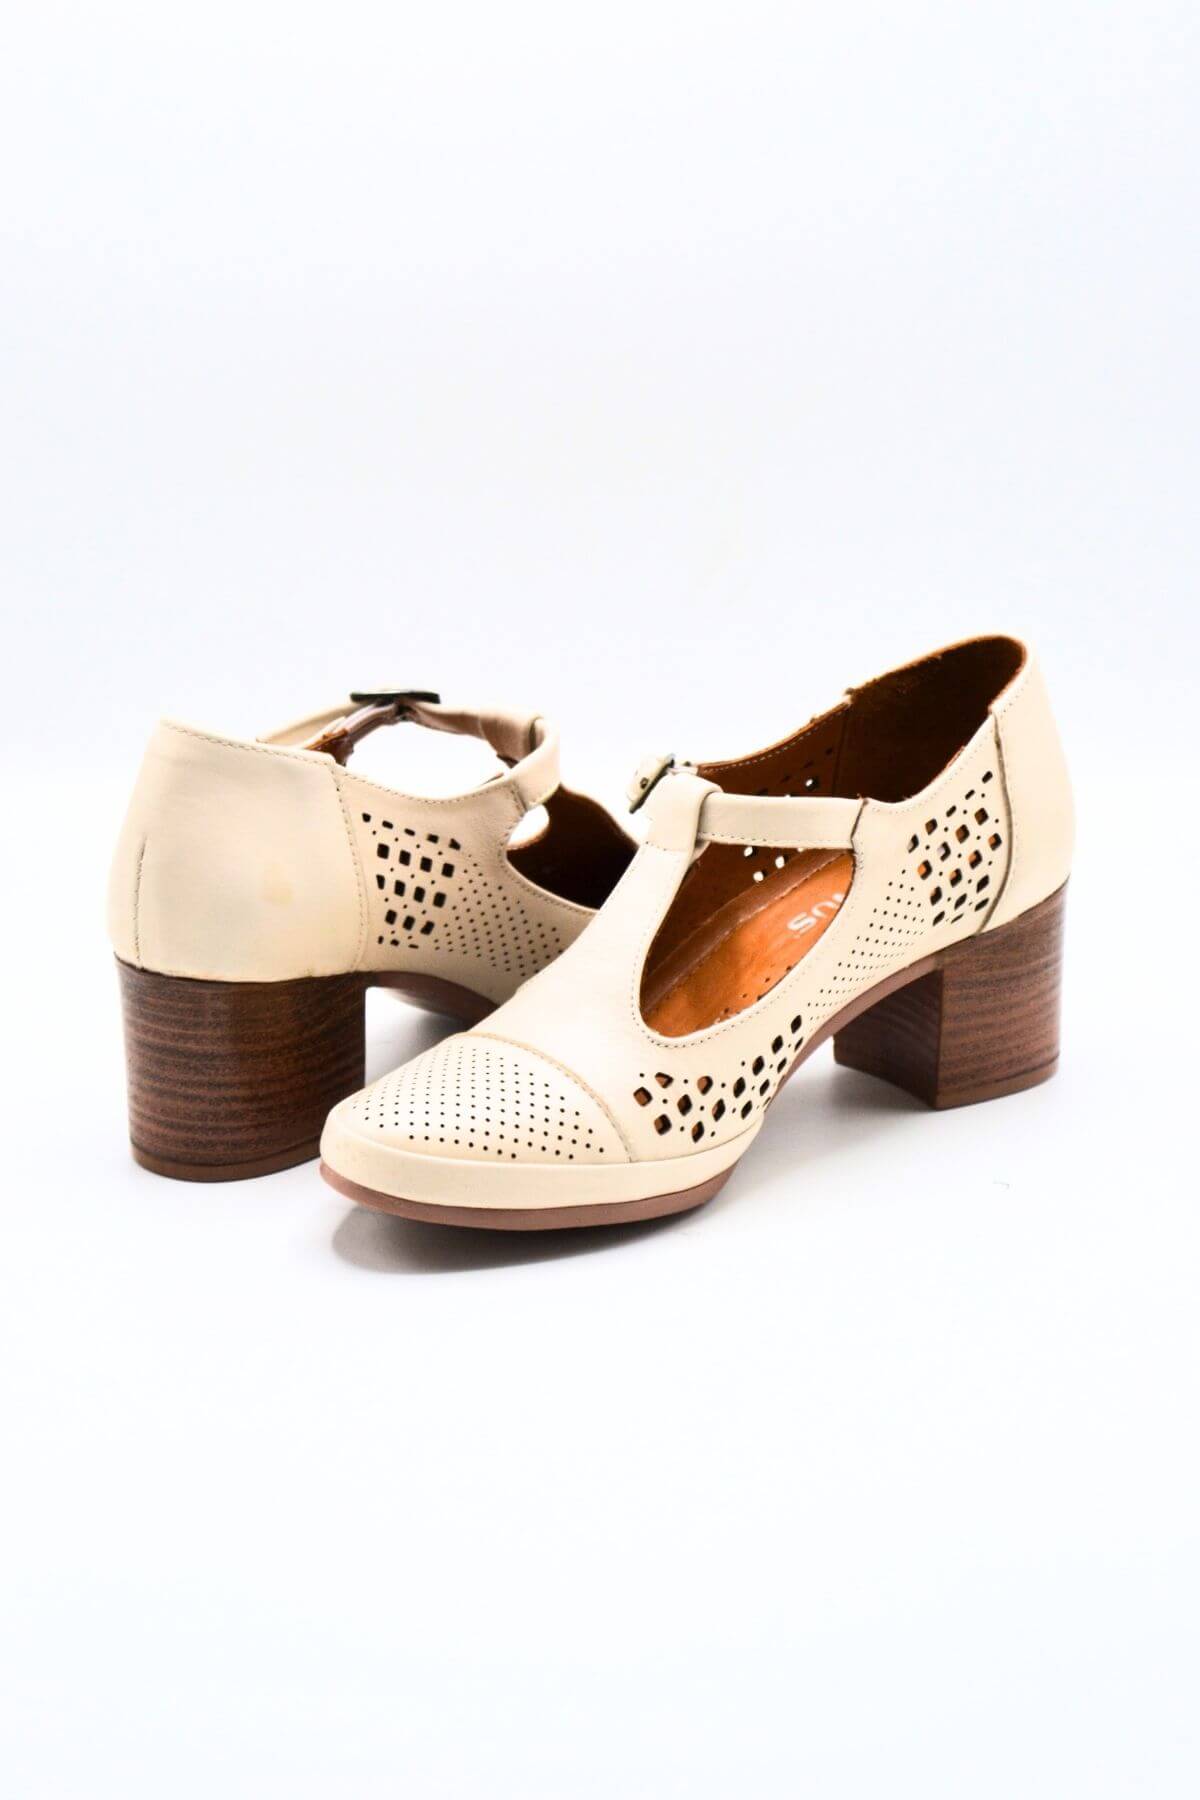 Kadın Yazlık Topuklu Deri Ayakkabı Bej 1911923Y - Thumbnail